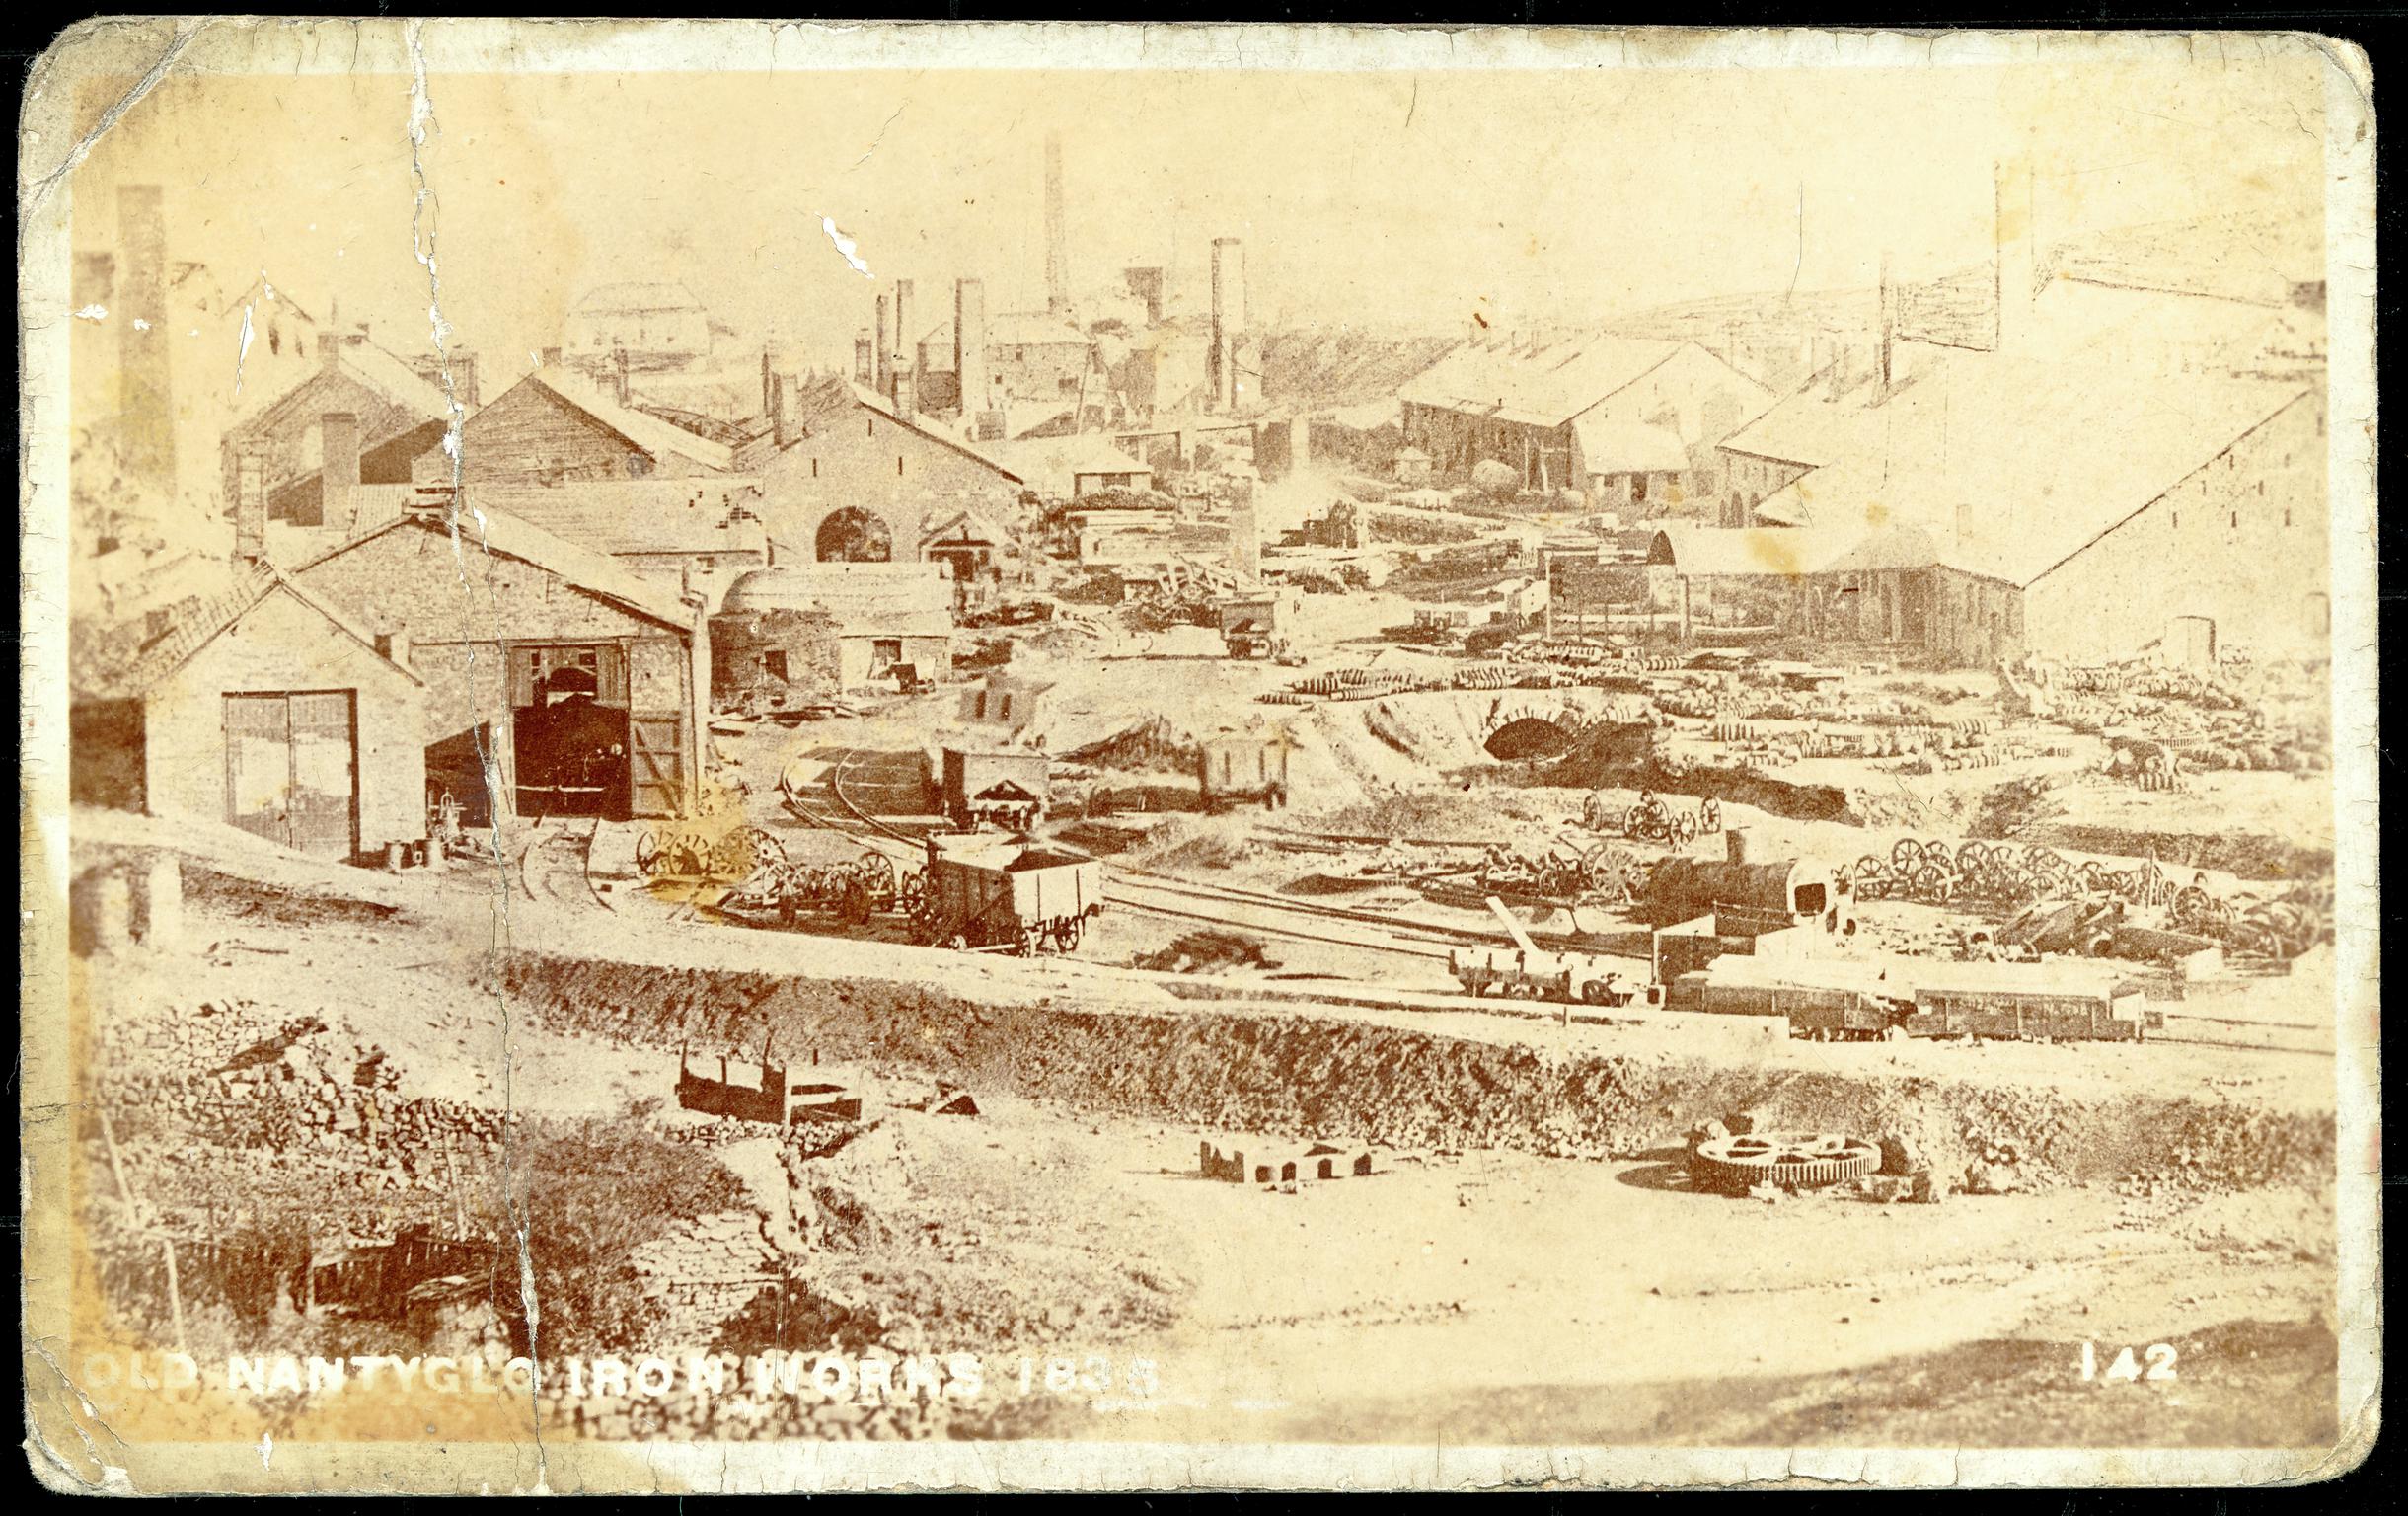 Old Nantyglo Iron Works (postcard)